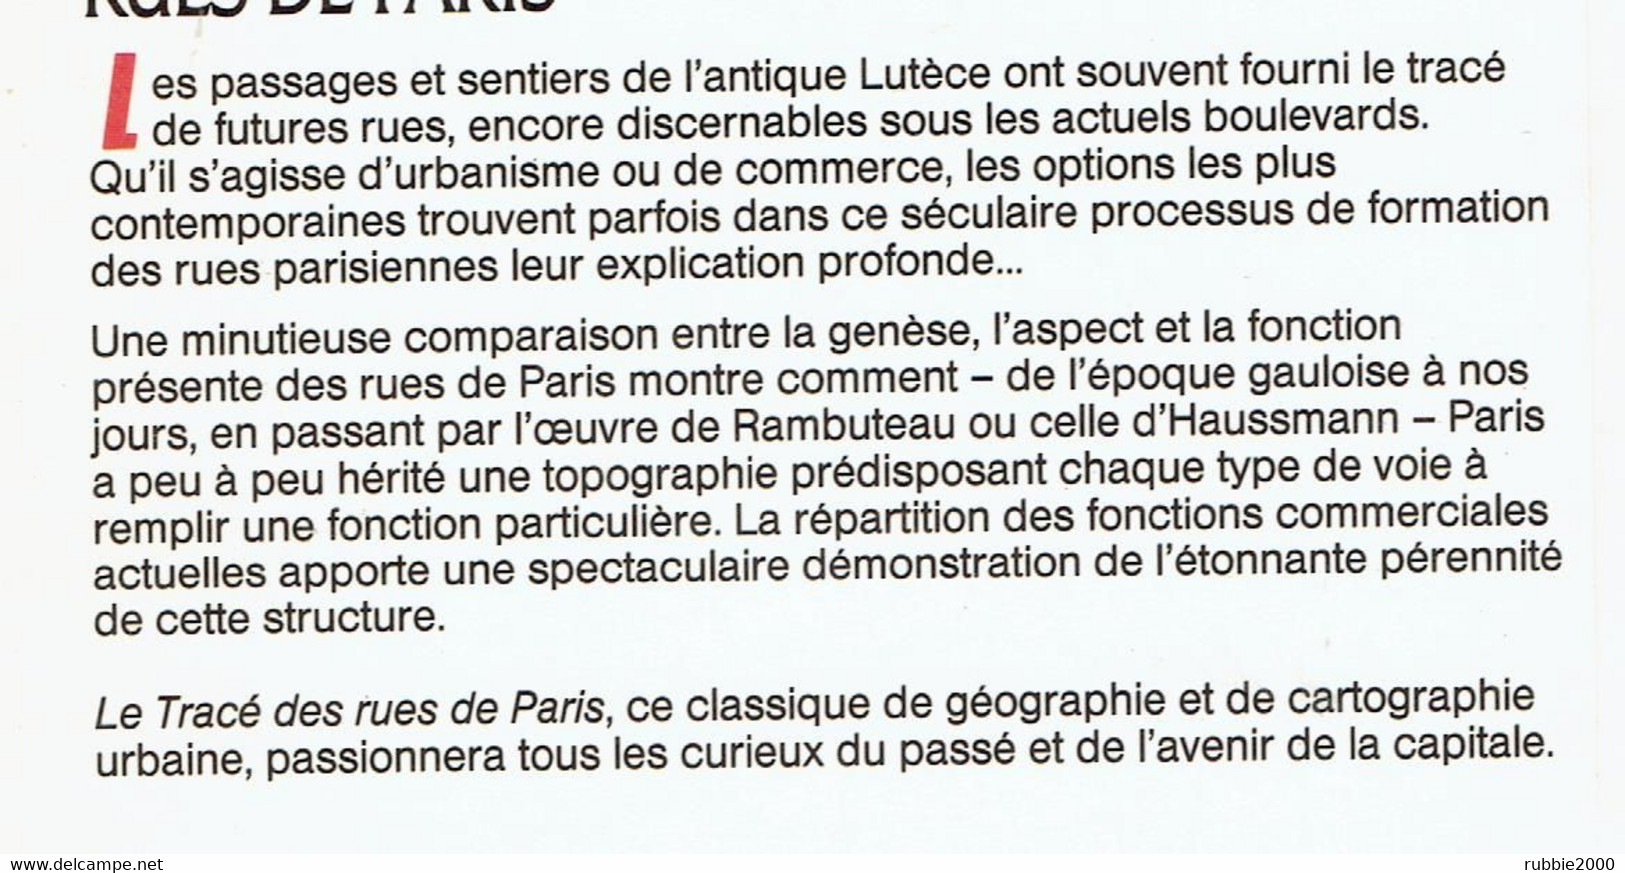 LE TRACE DES RUES DE PARIS 1988 BERNARD ROULEAU VOIE VOIRIE CIRCULATION QUARTIER RUE CHEMIN REMPART HAUSSMANN PLACE - Paris